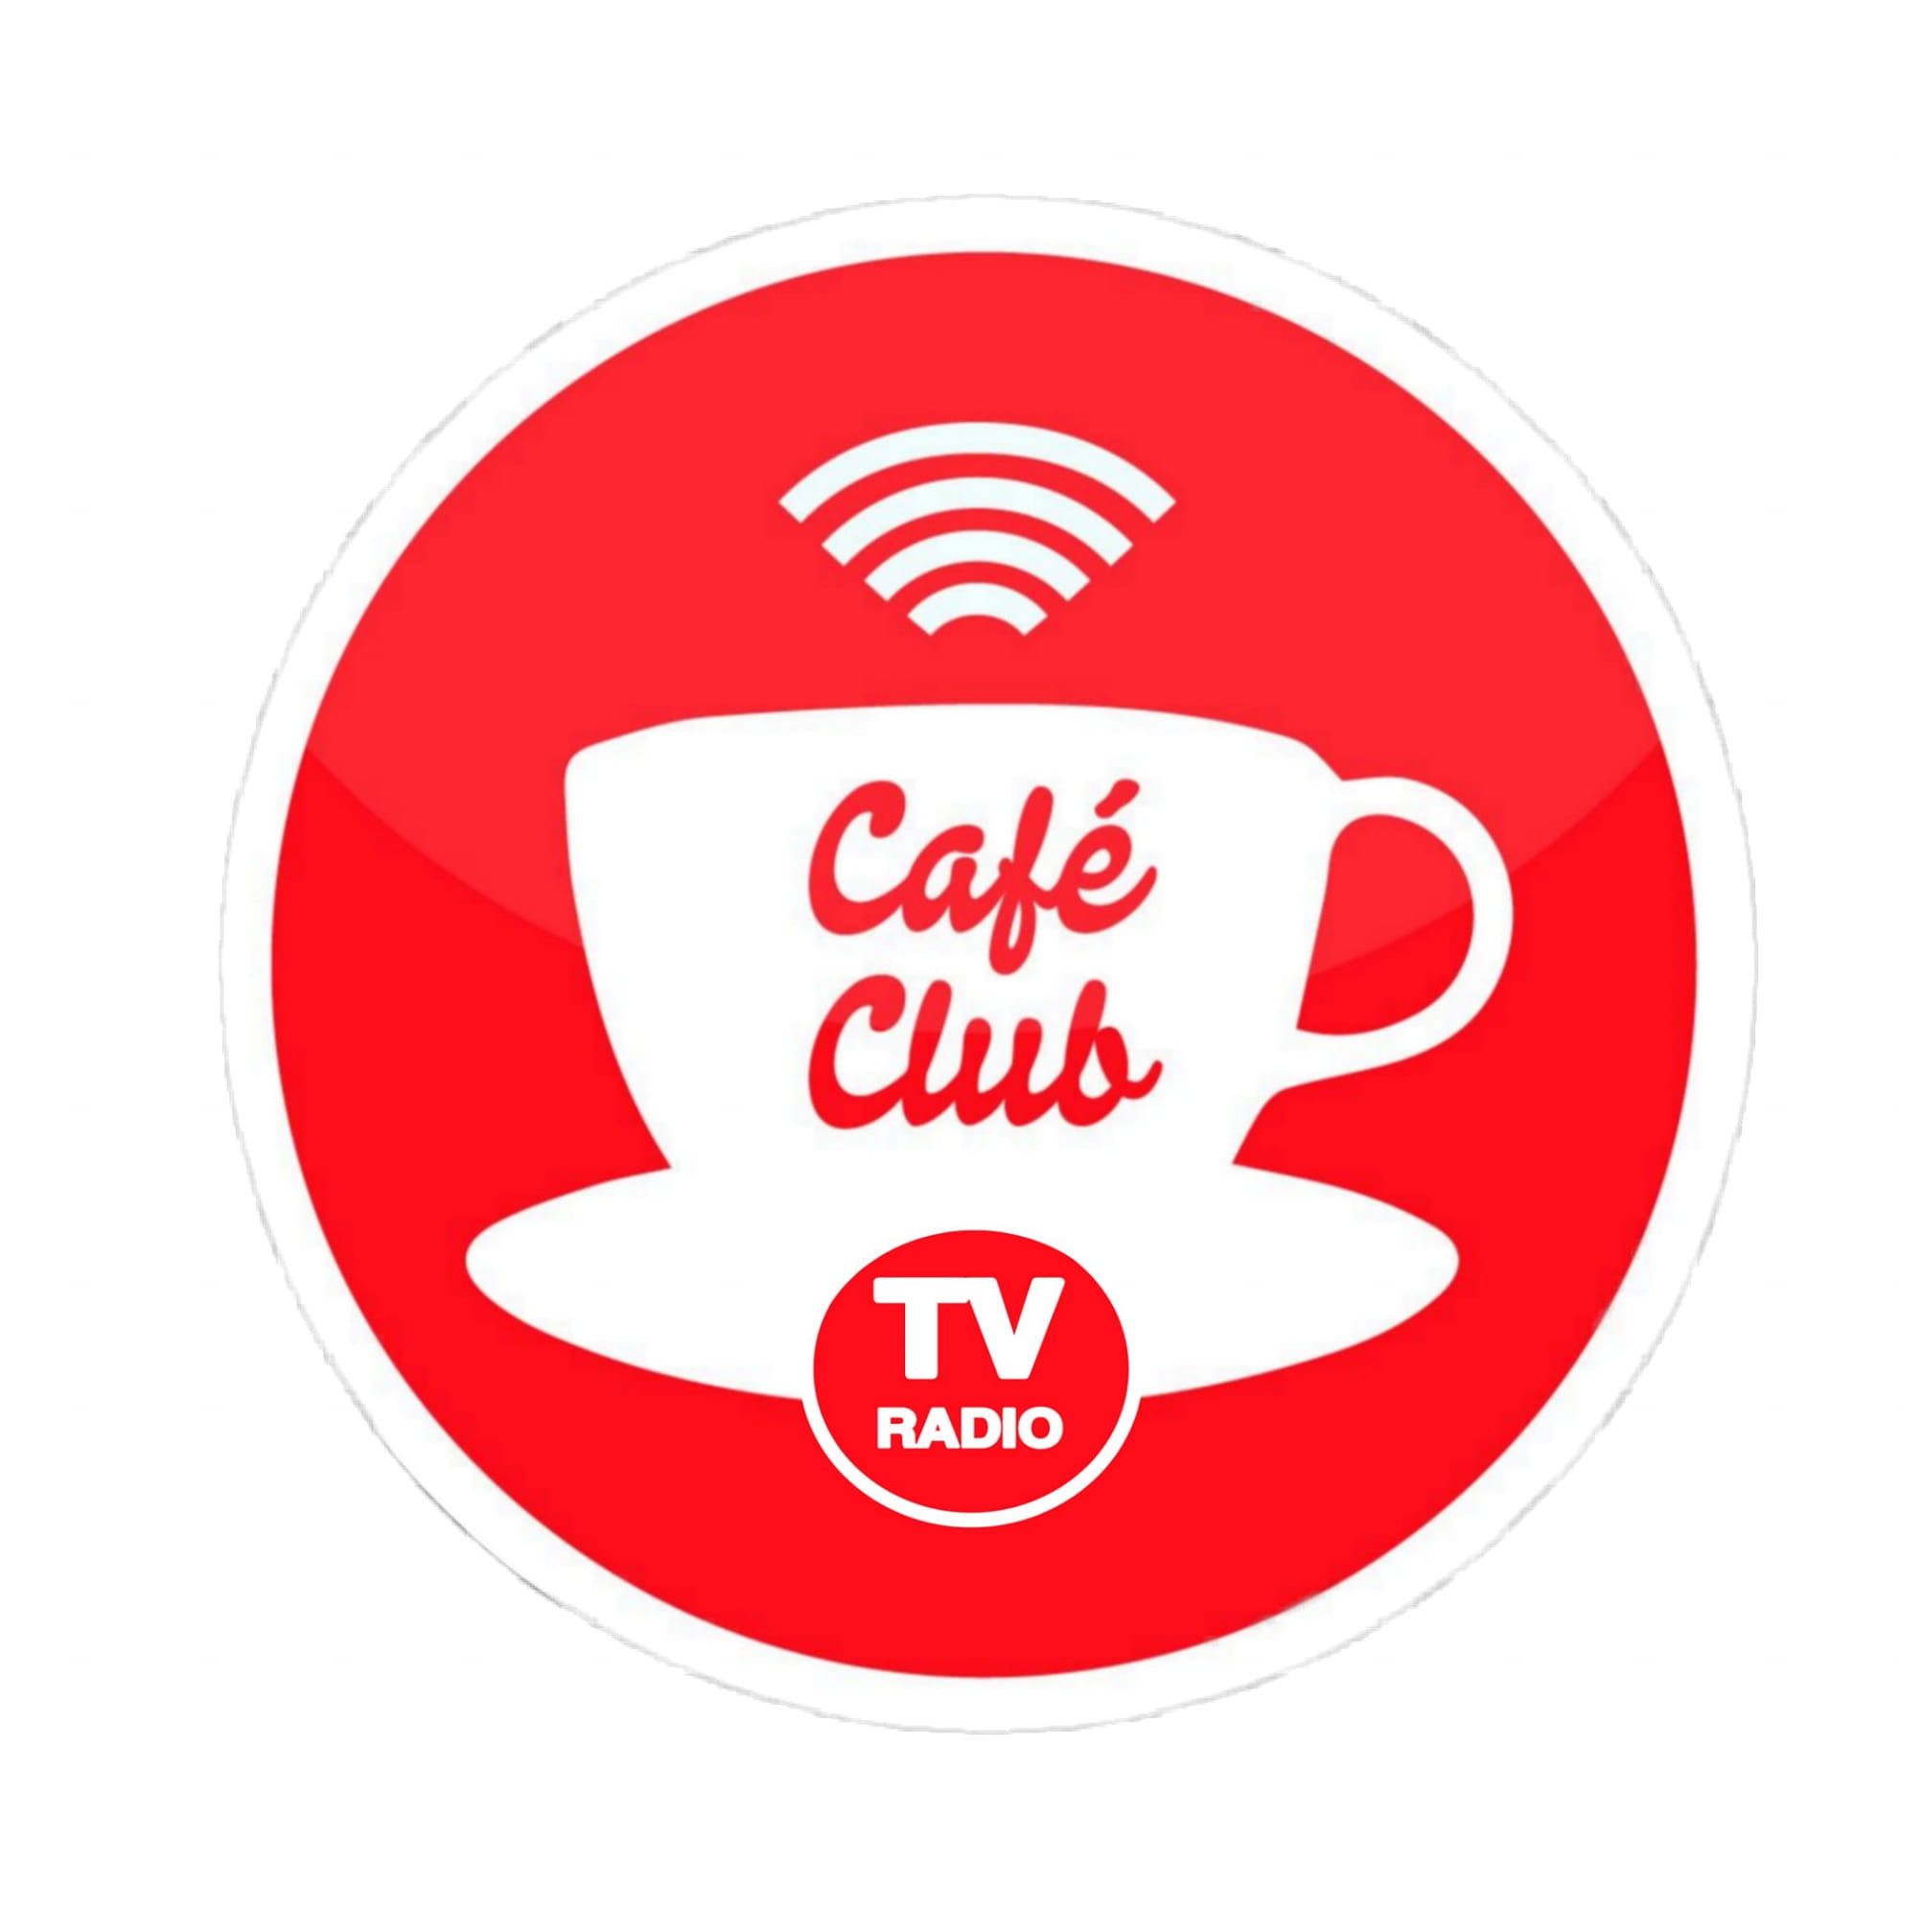 22141_Cafe Club Radio.jpg